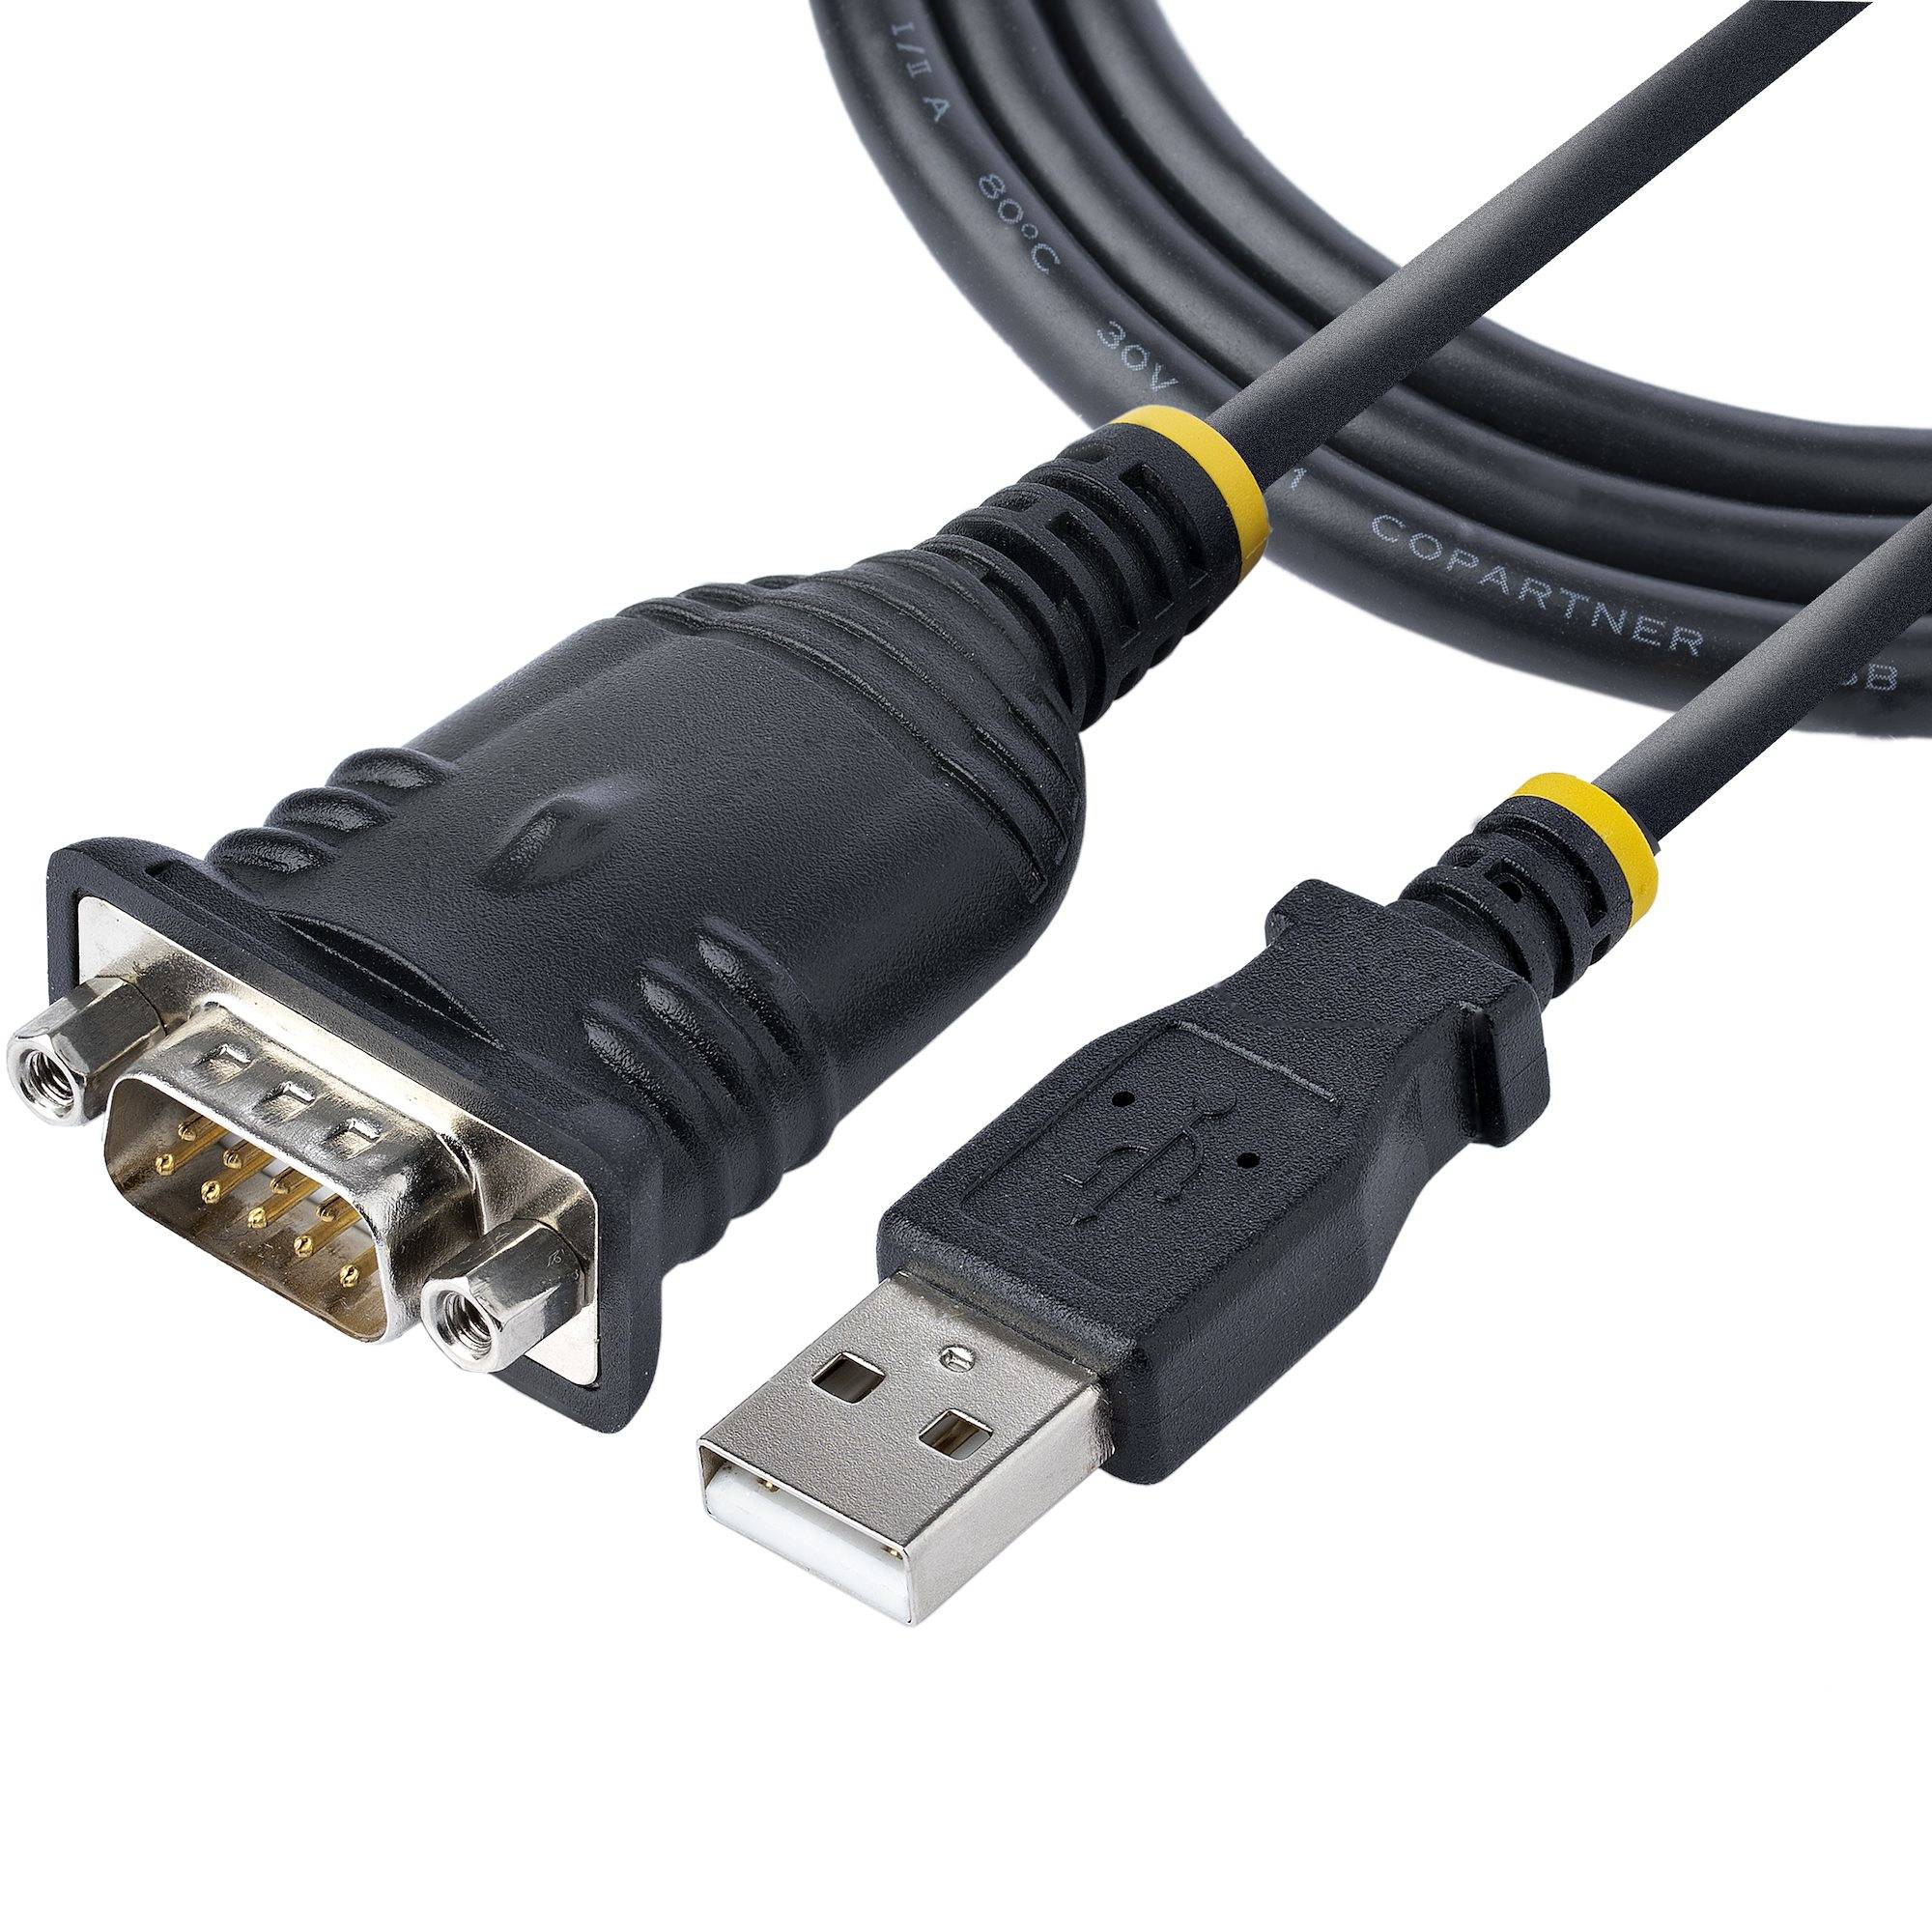 Rca Informatique - Image du produit : ADAPTATEUR USB VERS SERIE 1M - CONVERTISSEUR DB9 MALE A USB